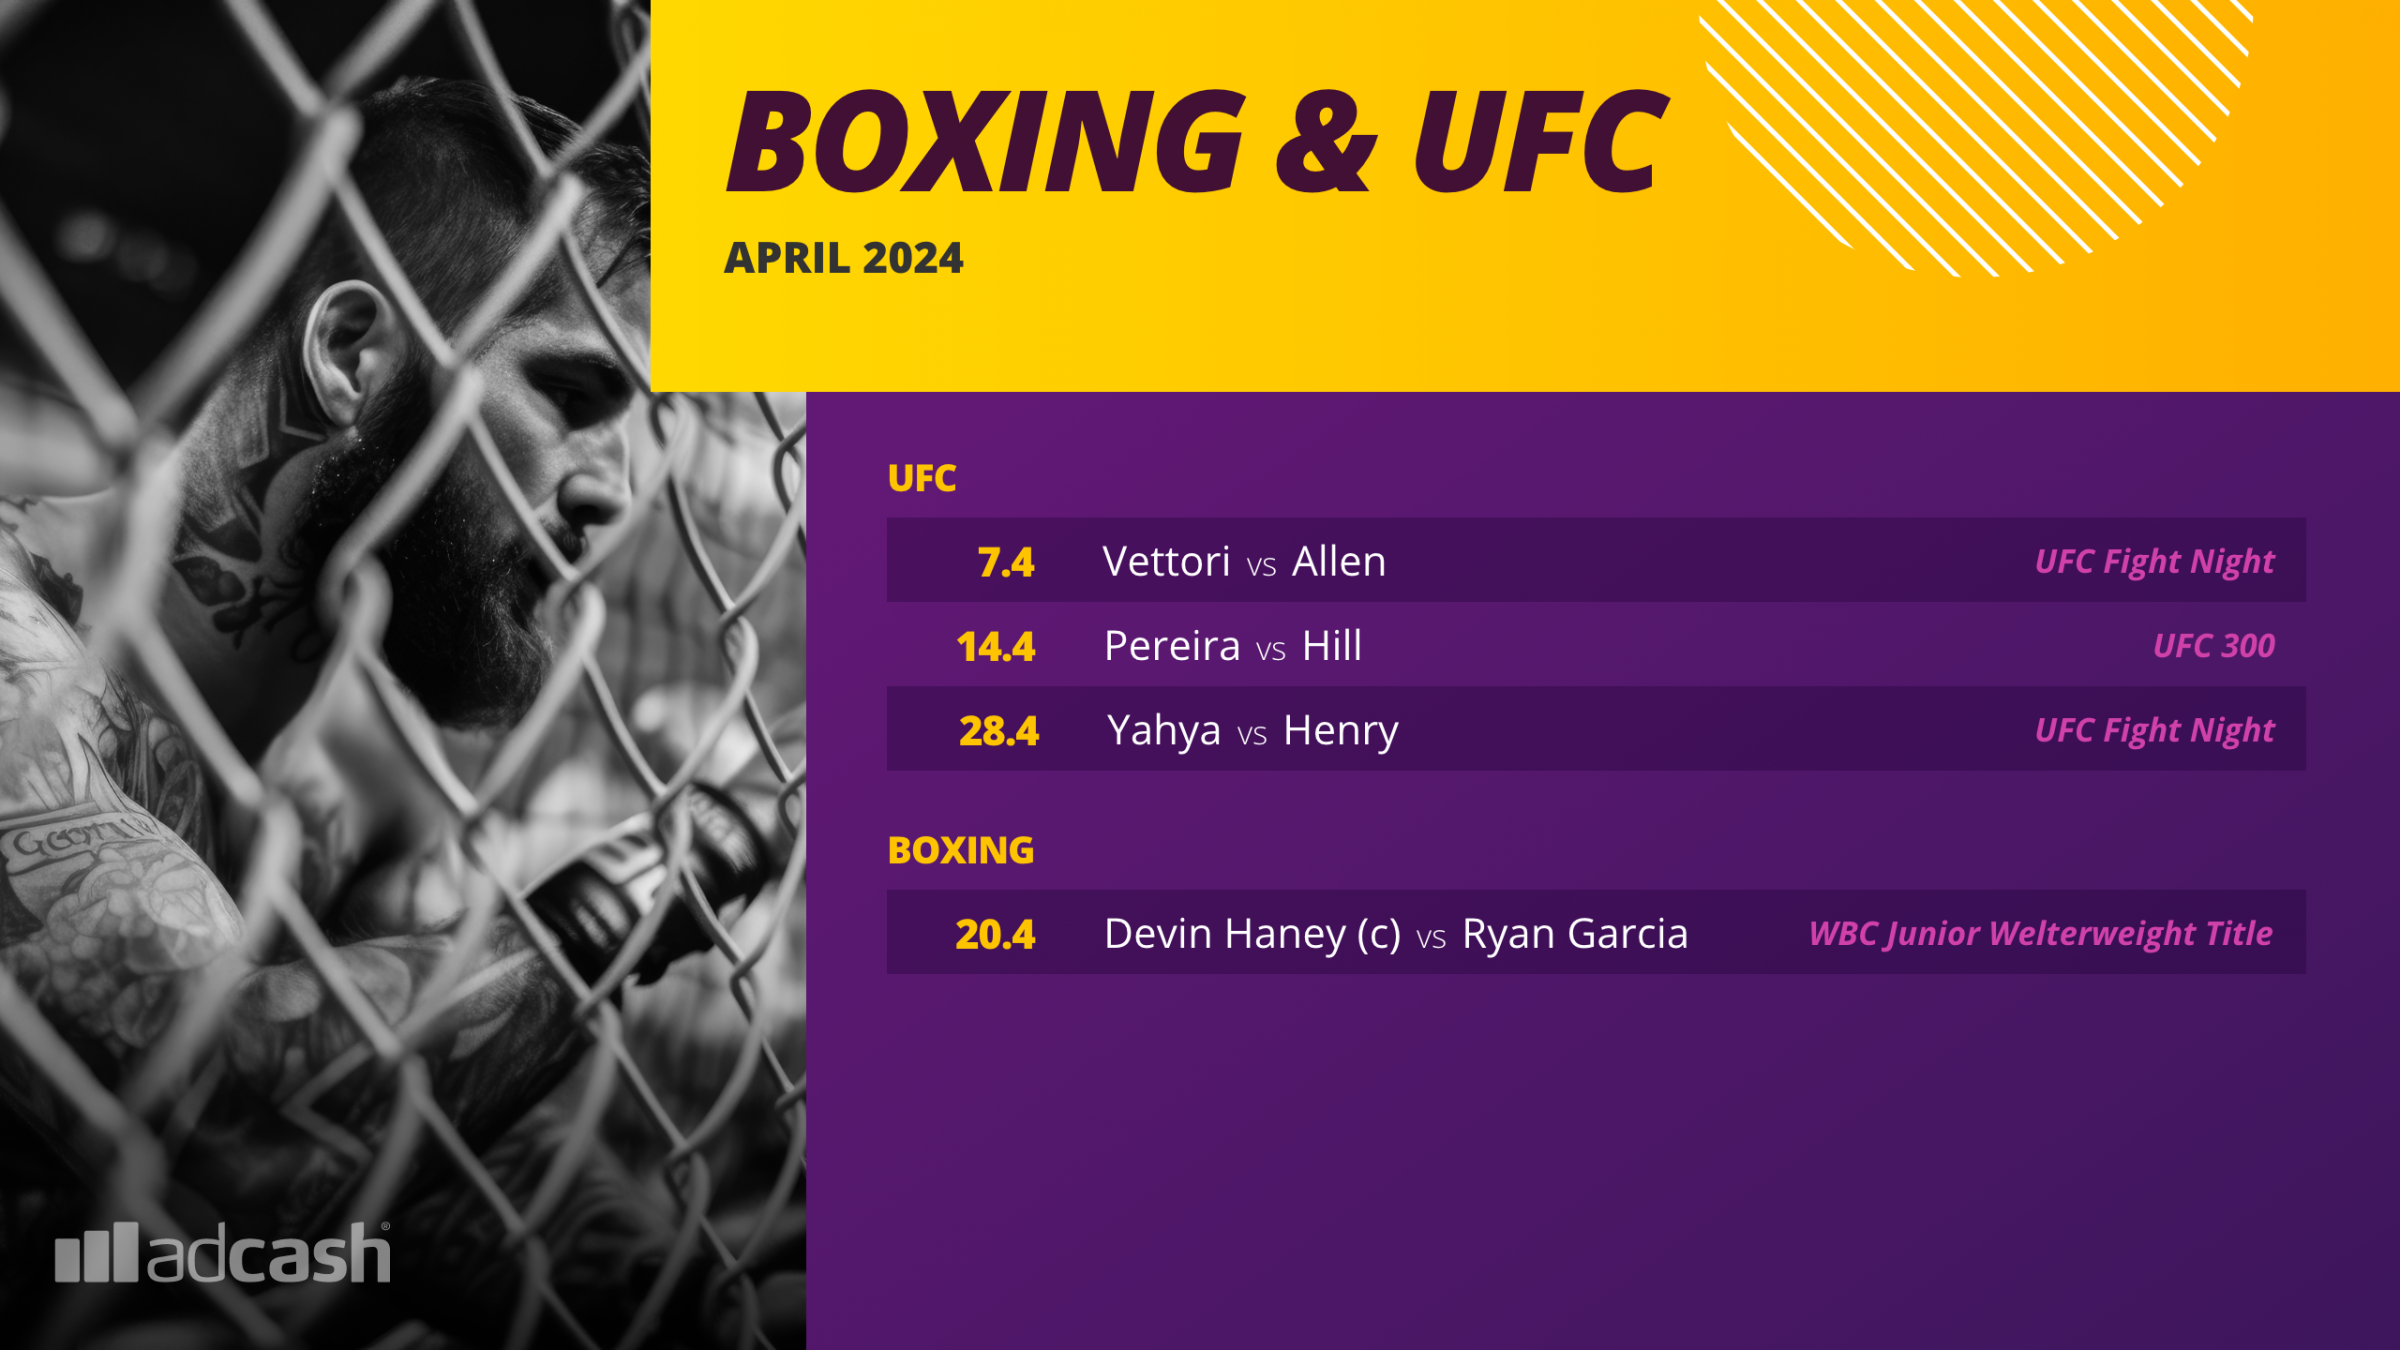 april-boxing-ufc-2560-x-1440-1-png.49679